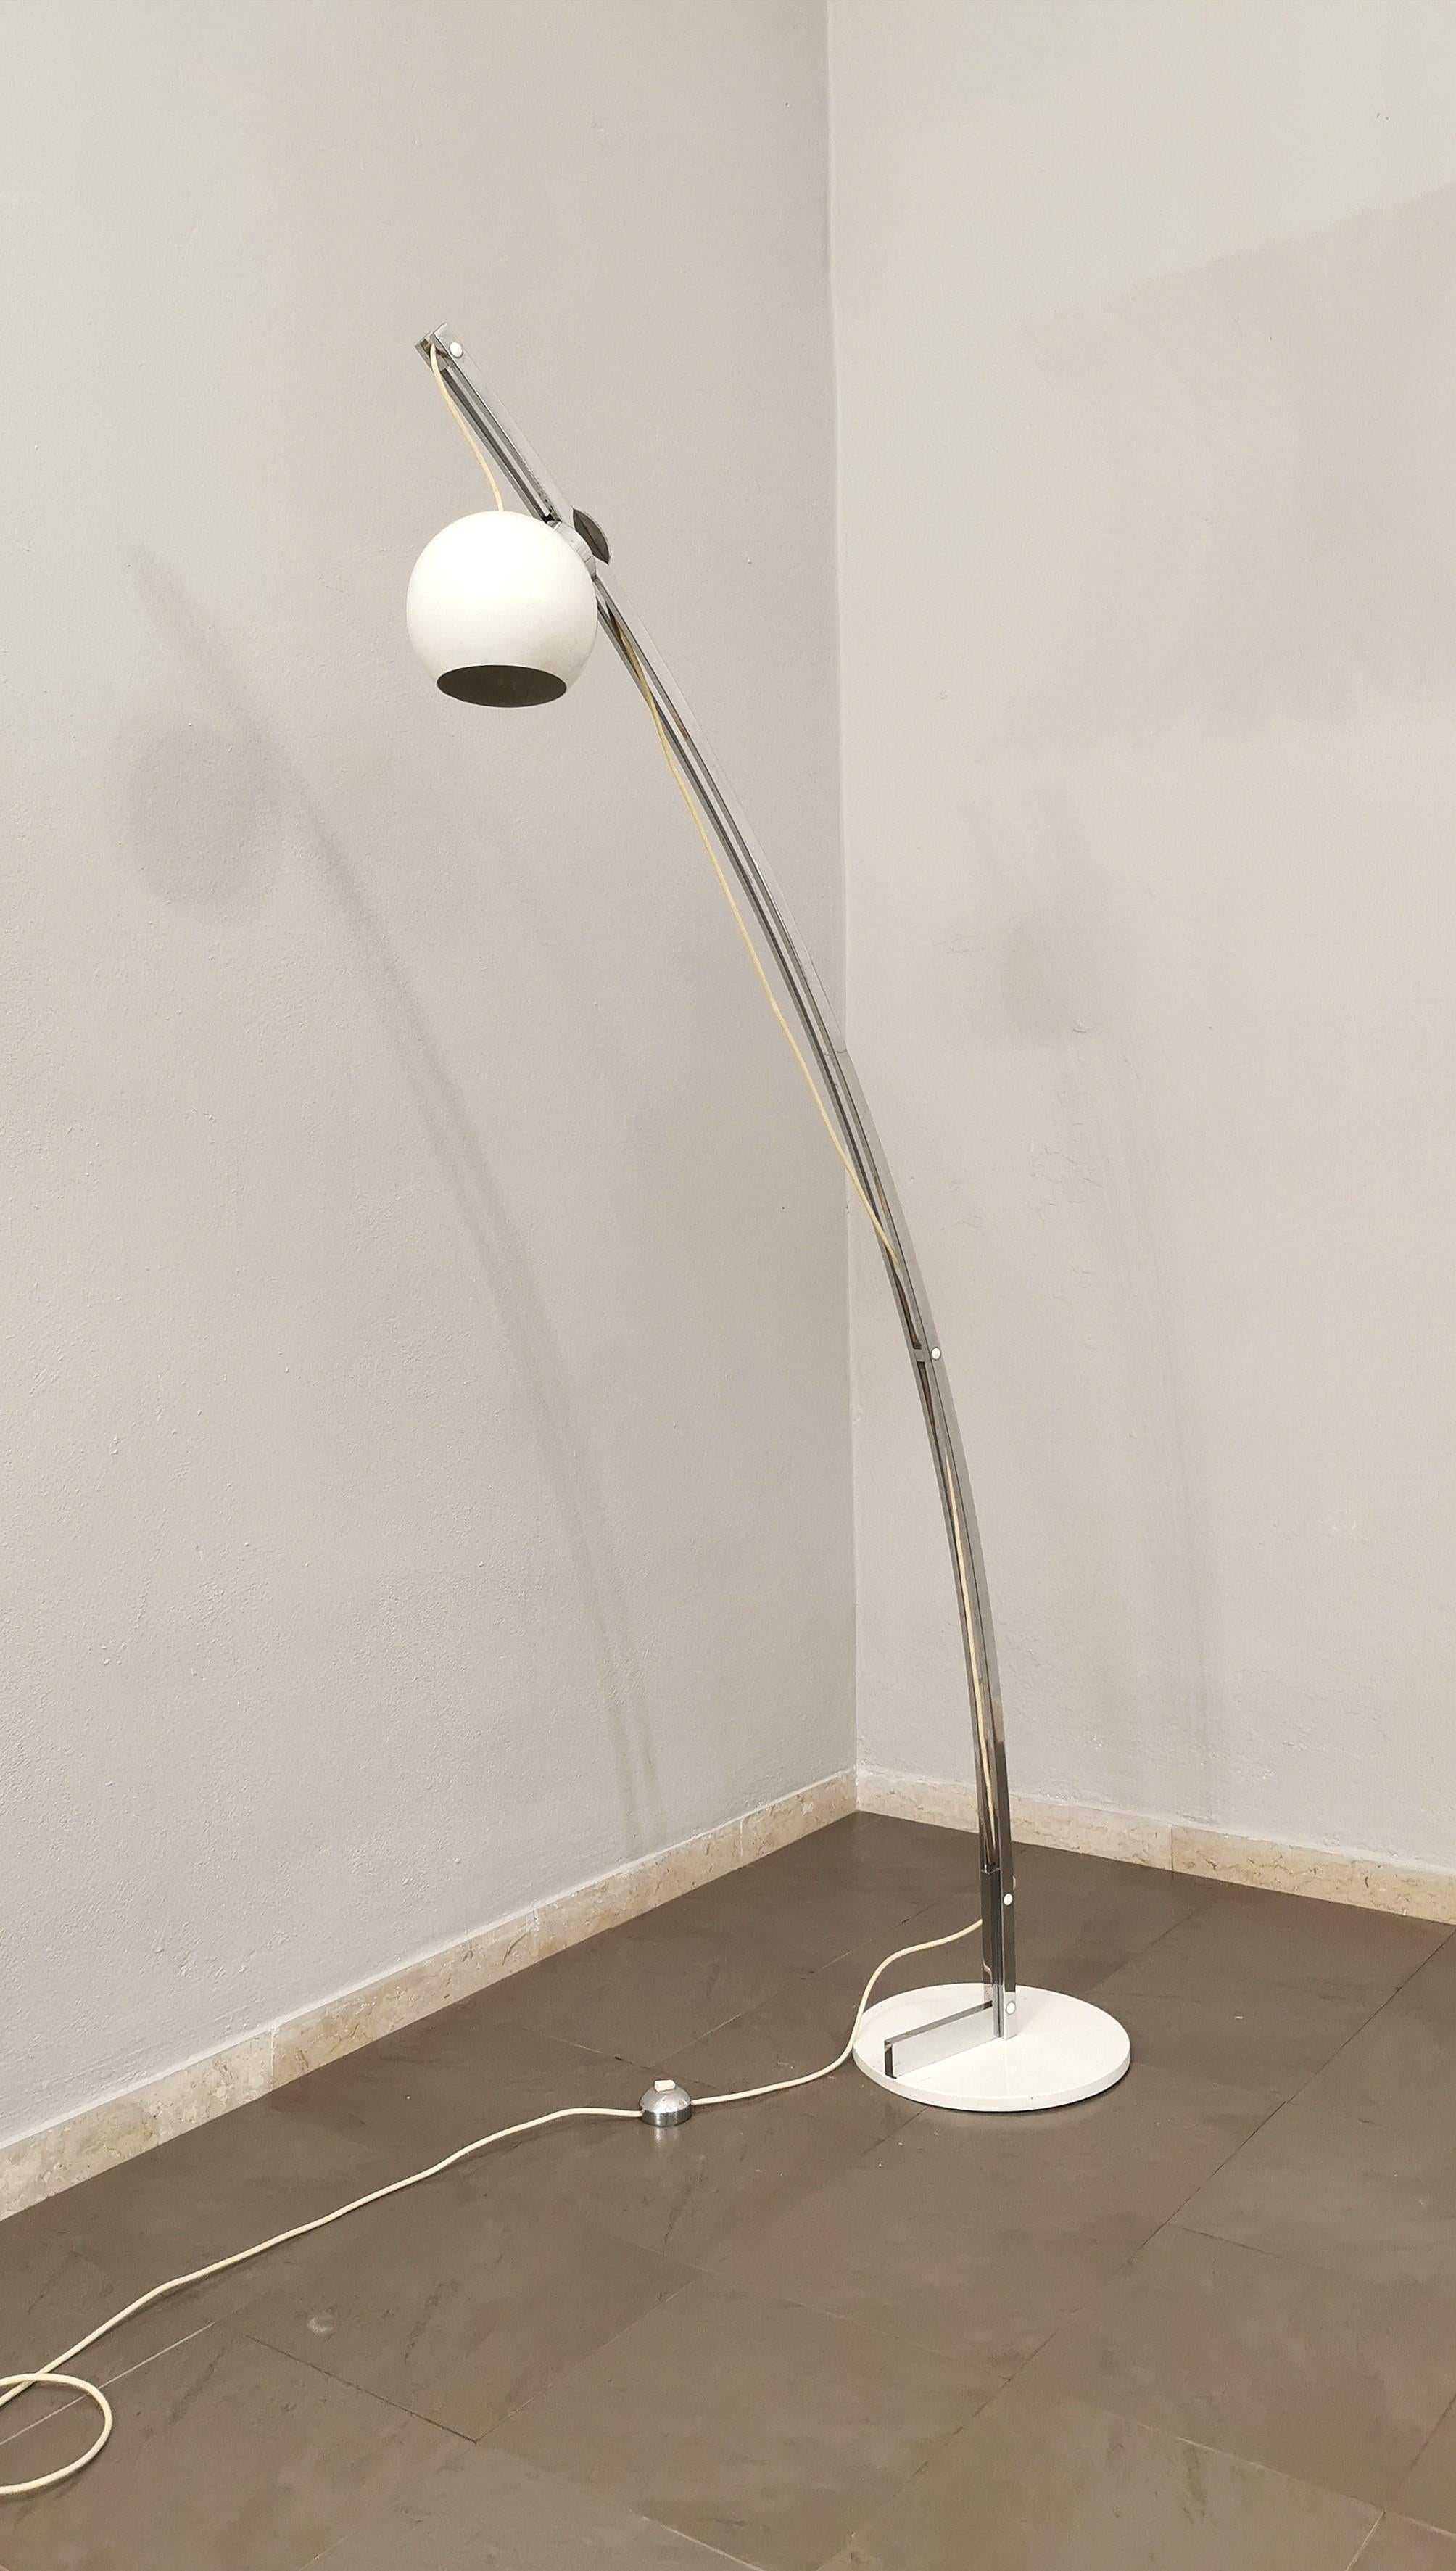 Mid-Century Modern Midcentury Floor Lamp Reggiani Style Chromed Enameled Metal Italian Design 1970s For Sale